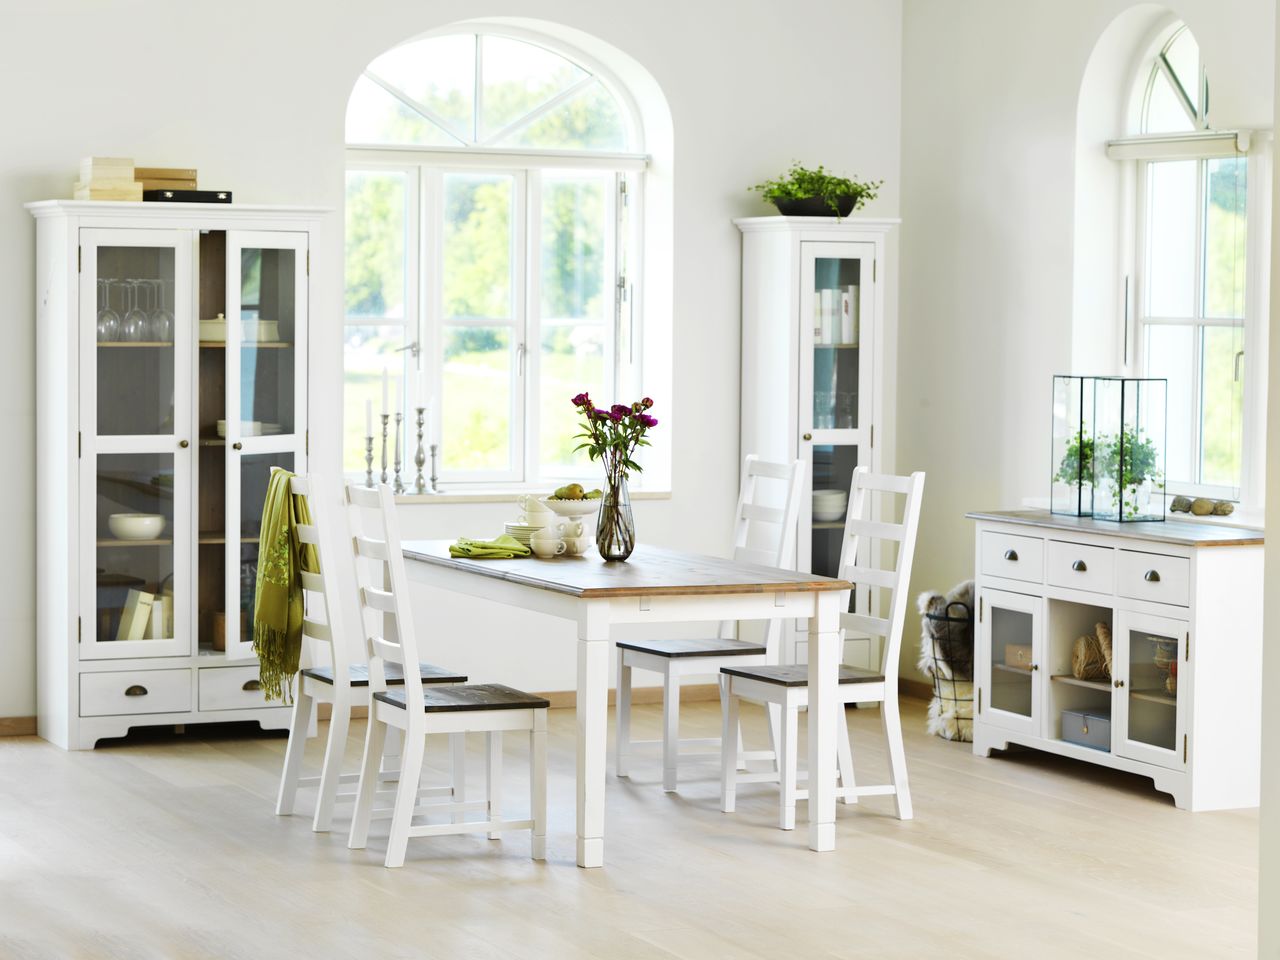 Trang trí nhà bếp thanh lịch với tường trắng giúp không gian thêm rộng mở